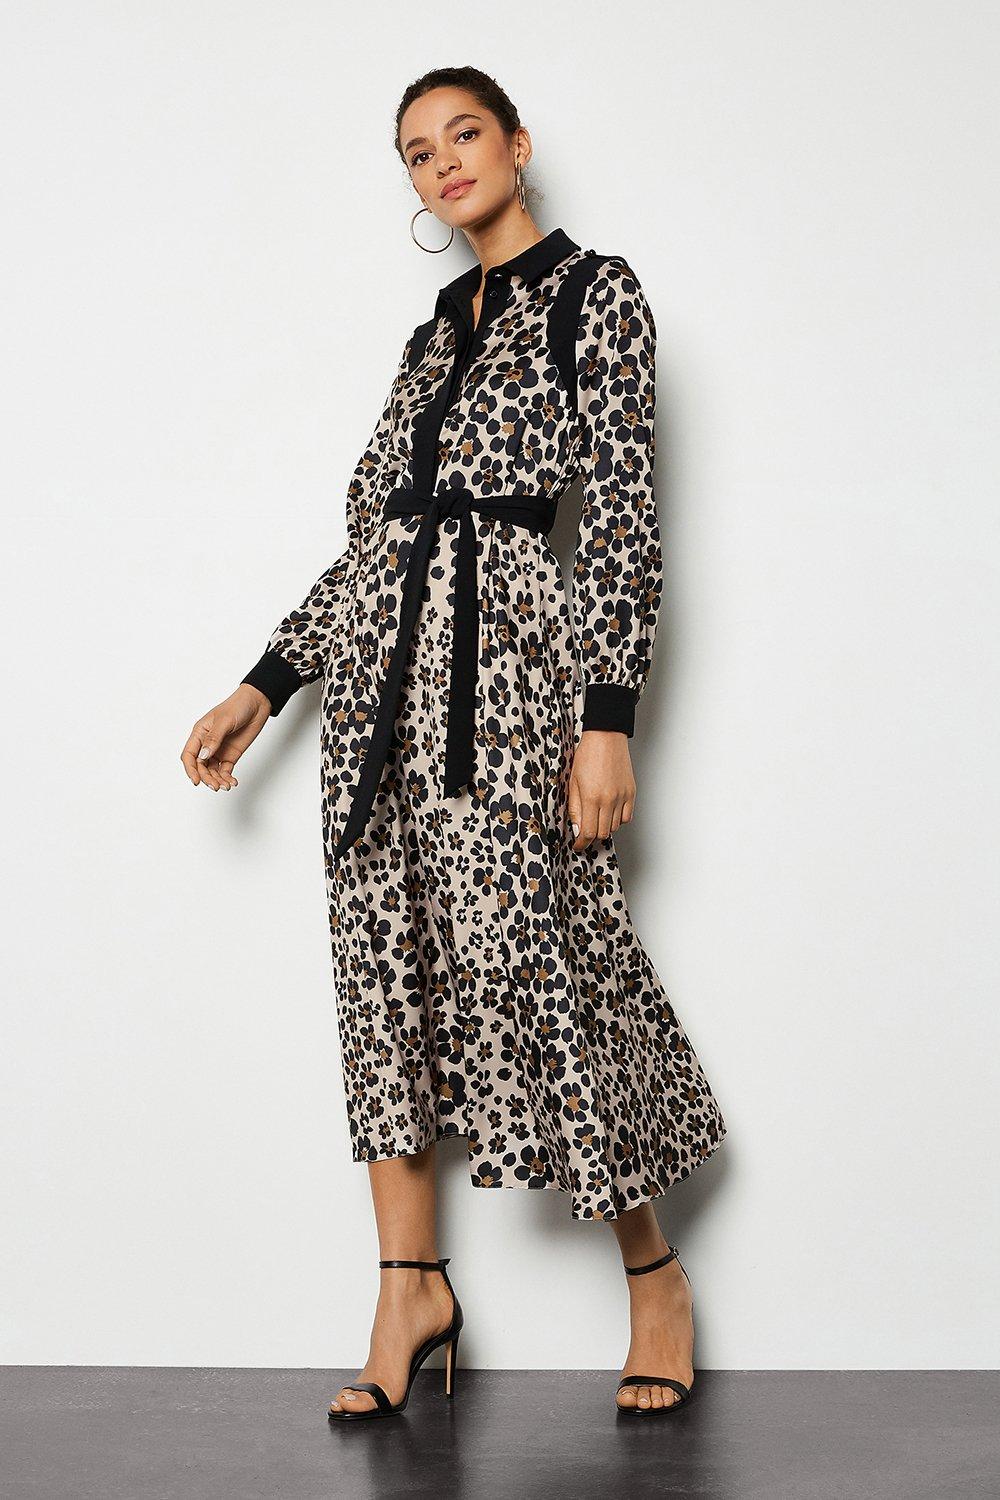 leopard long shirt dress